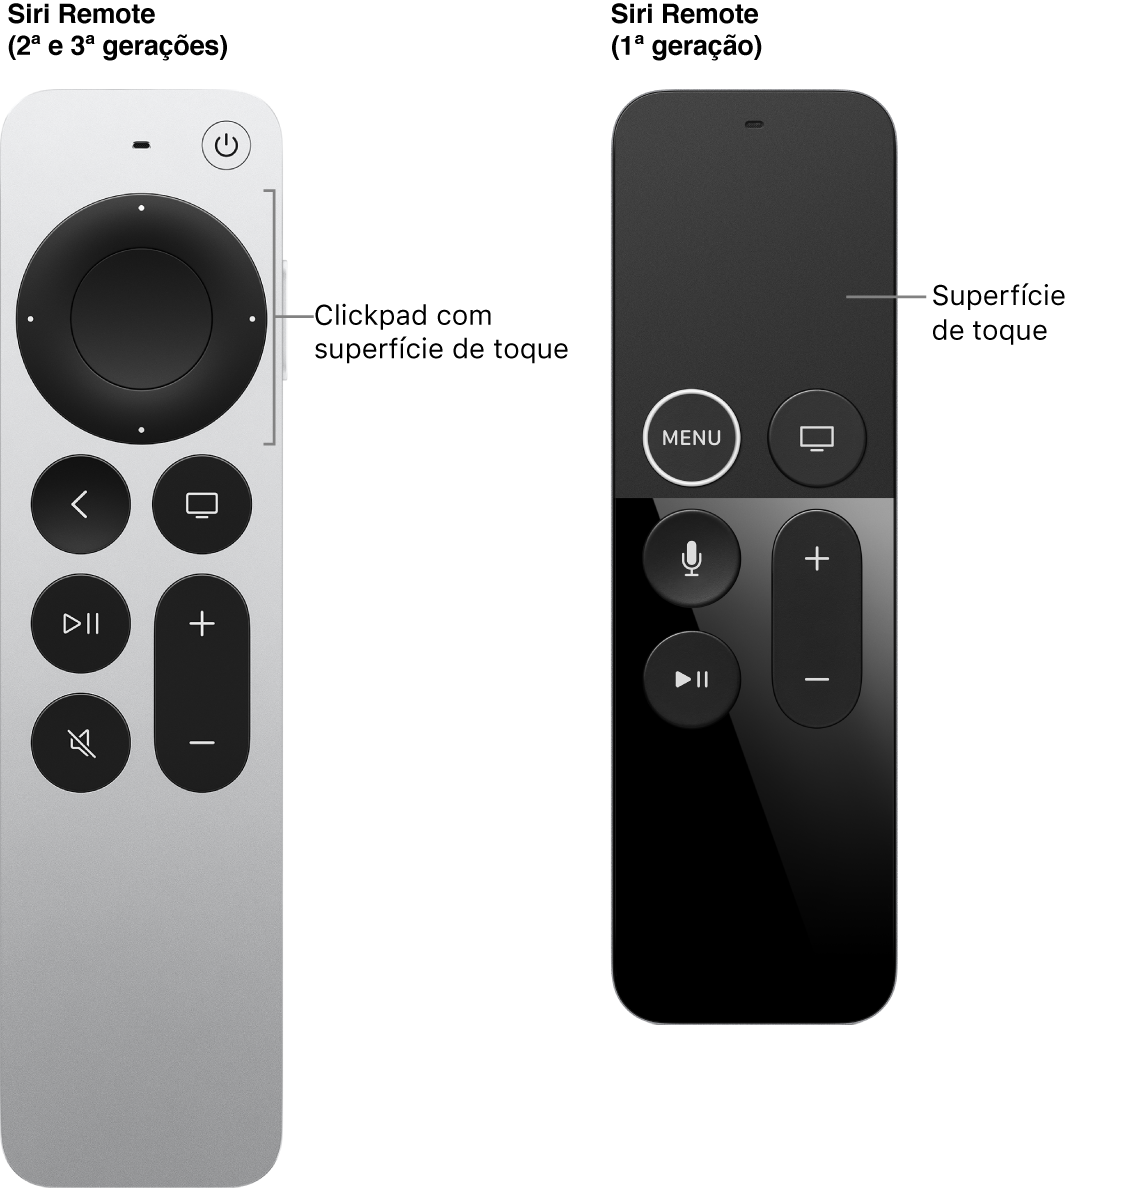 Siri Remote (2ª e 3ª gerações) com clickpad e Siri Remote (1ª geração) com superfície de toque